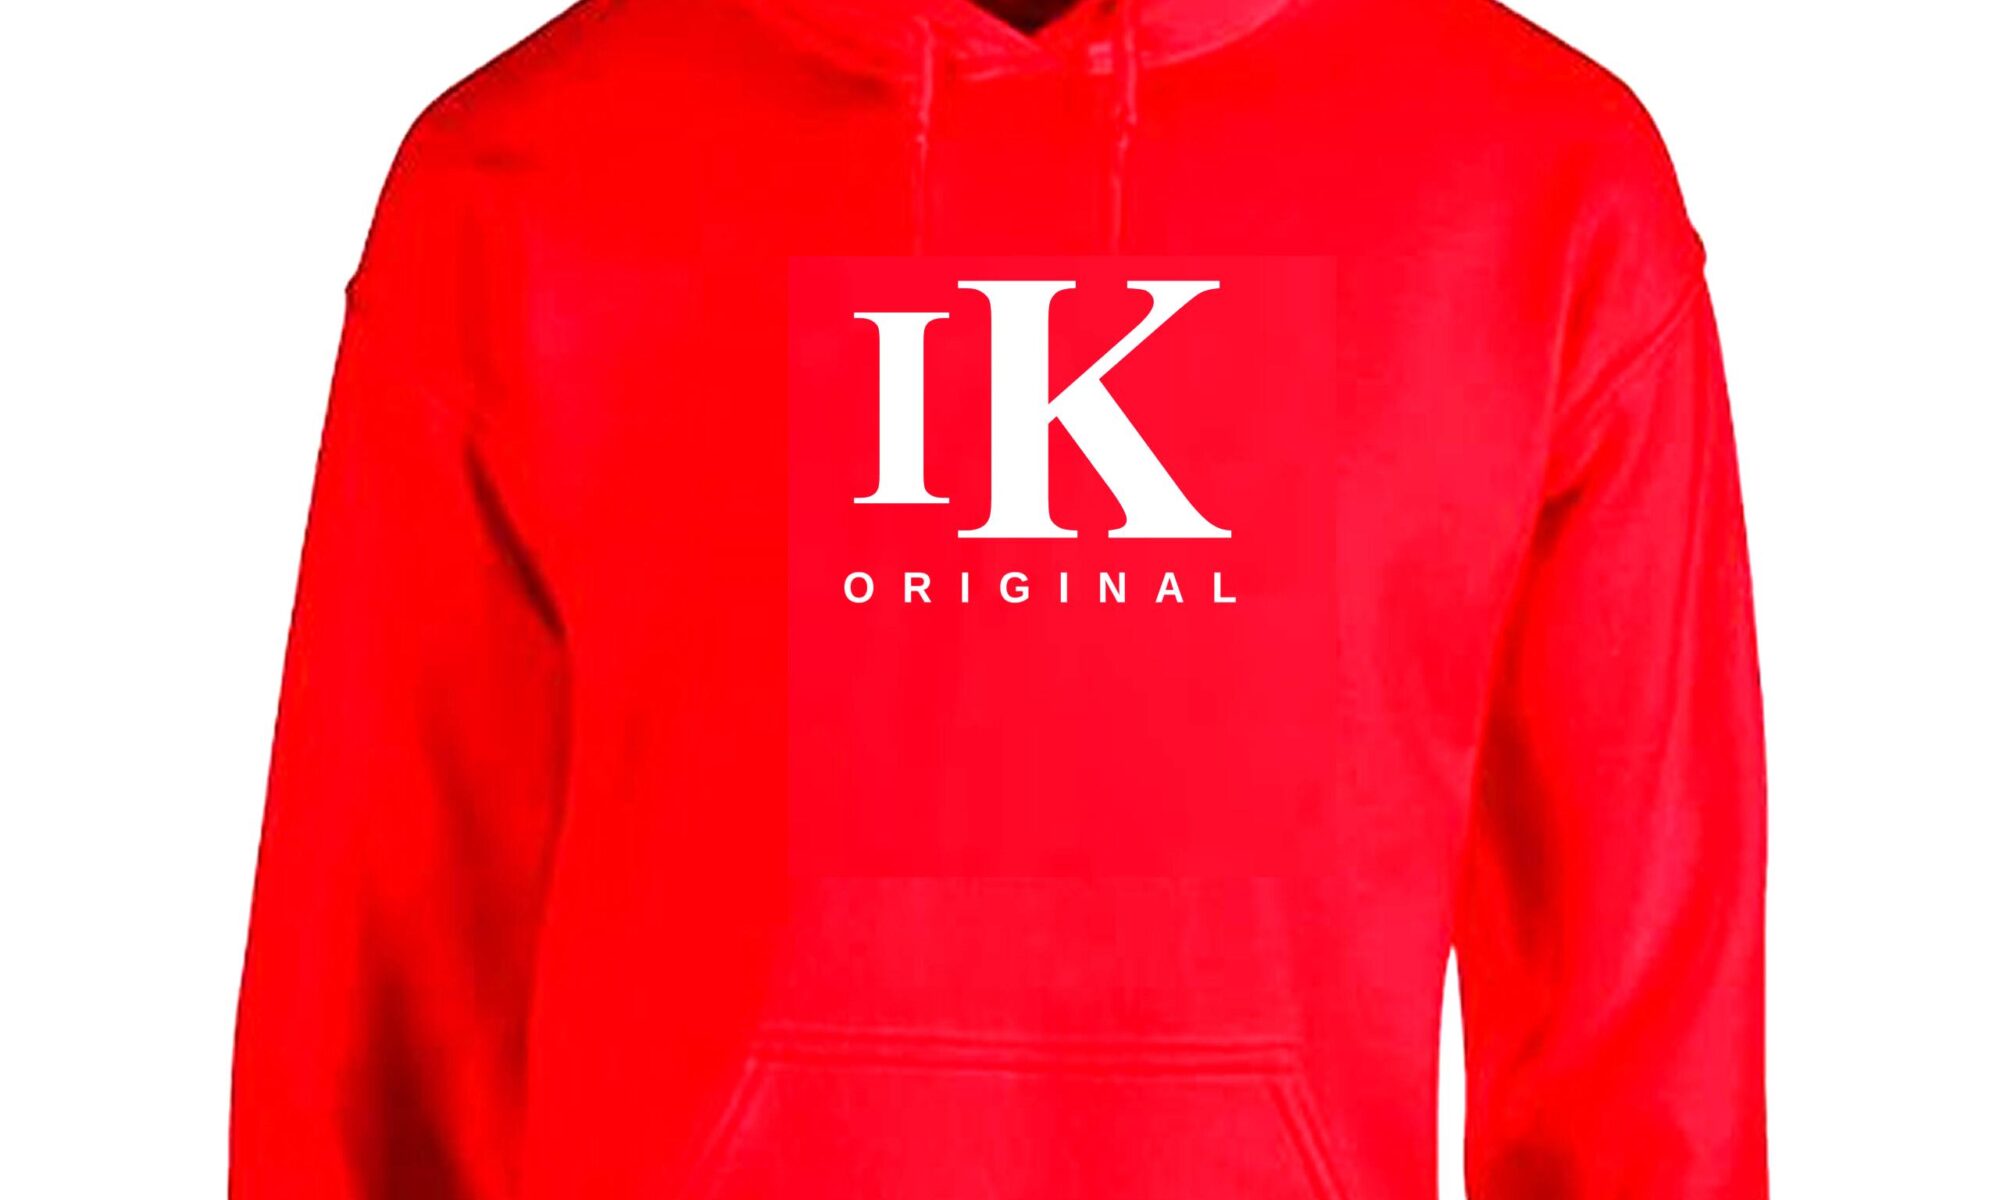 IK-Original-Red-Hoodies-scaled